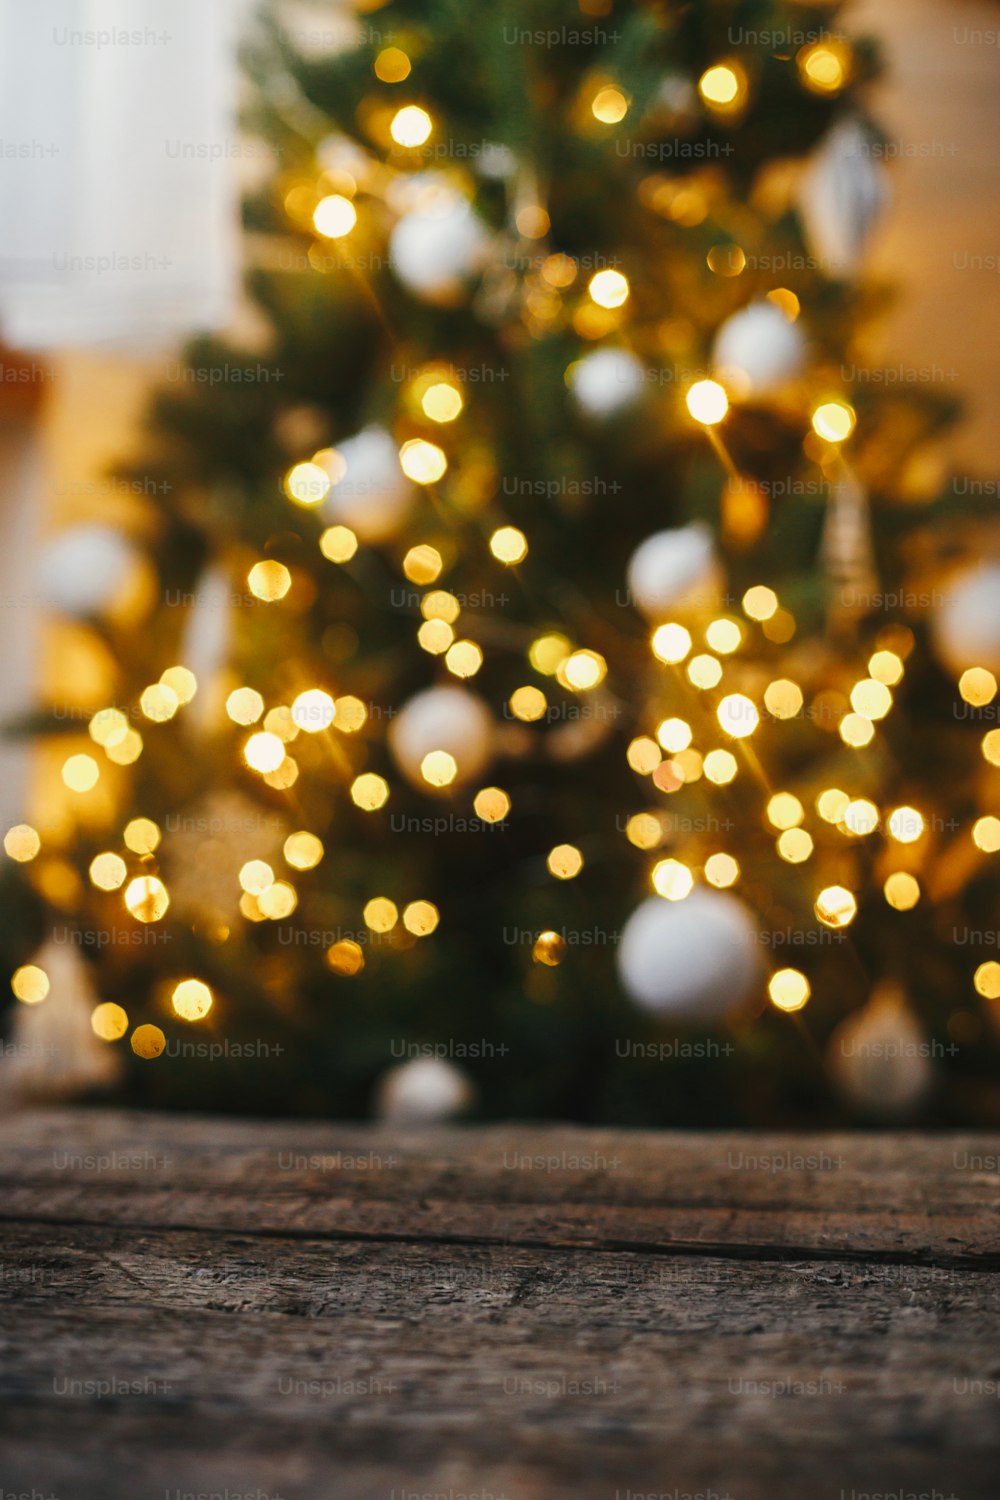 Sfondo natalizio. Legno rustico sullo sfondo dell'albero di natale illumina il bokeh dorato. Spazio per il testo. Albero decorato che risplende nella festosa stanza scandinava. Suggestiva vigilia di Natale. Buone Feste